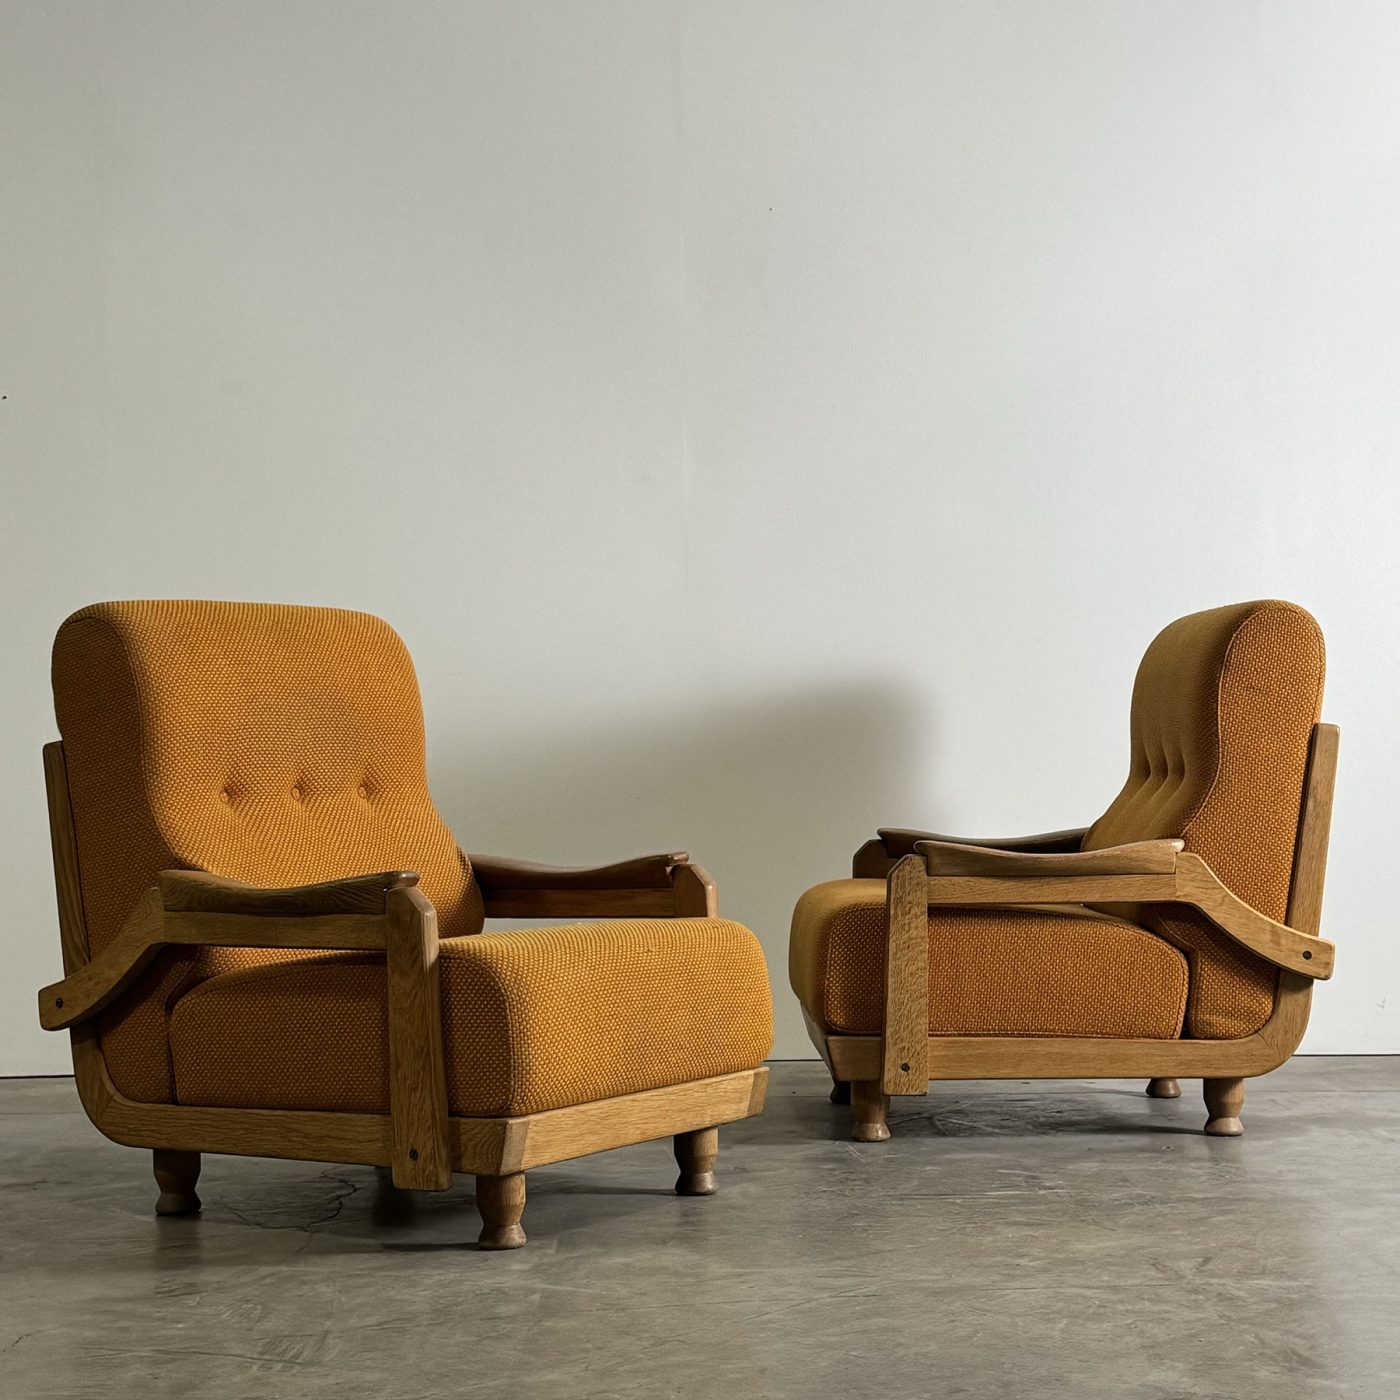 objet-vagabond-guillerme-armchairs0003